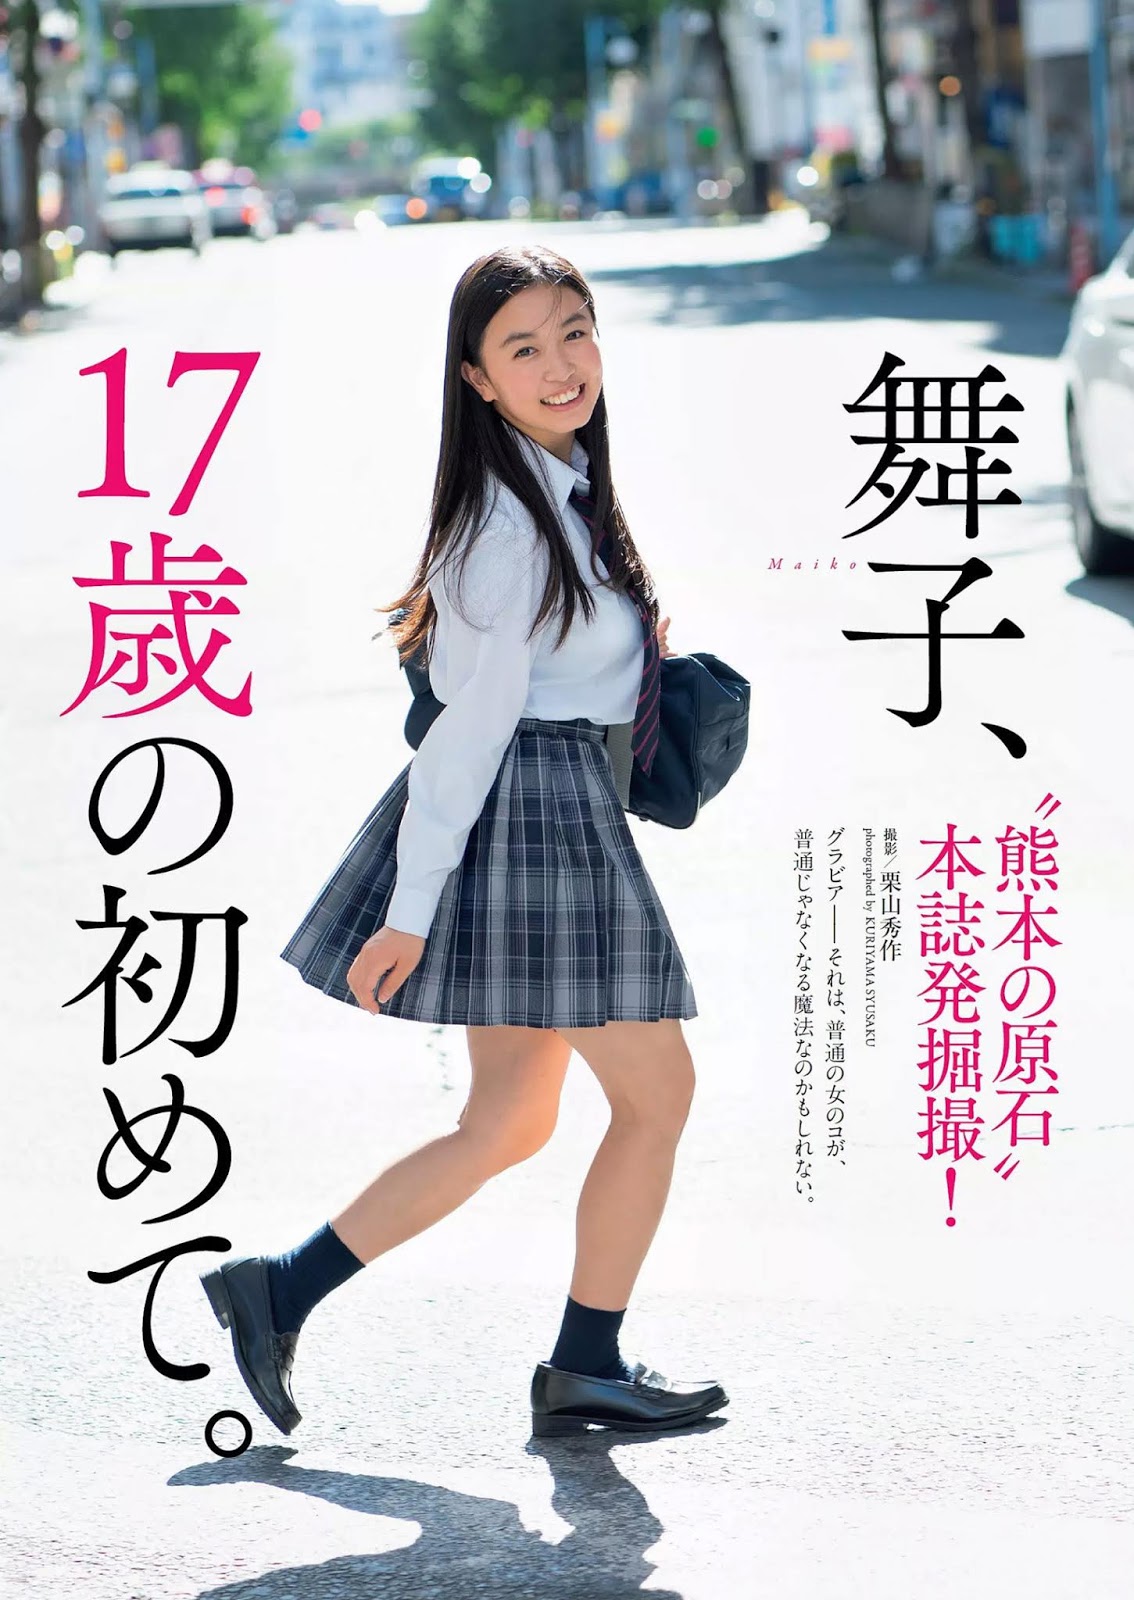 Maiko 舞子, Weekly Playboy 2019 No.52 (週刊プレイボーイ 2019年52号)